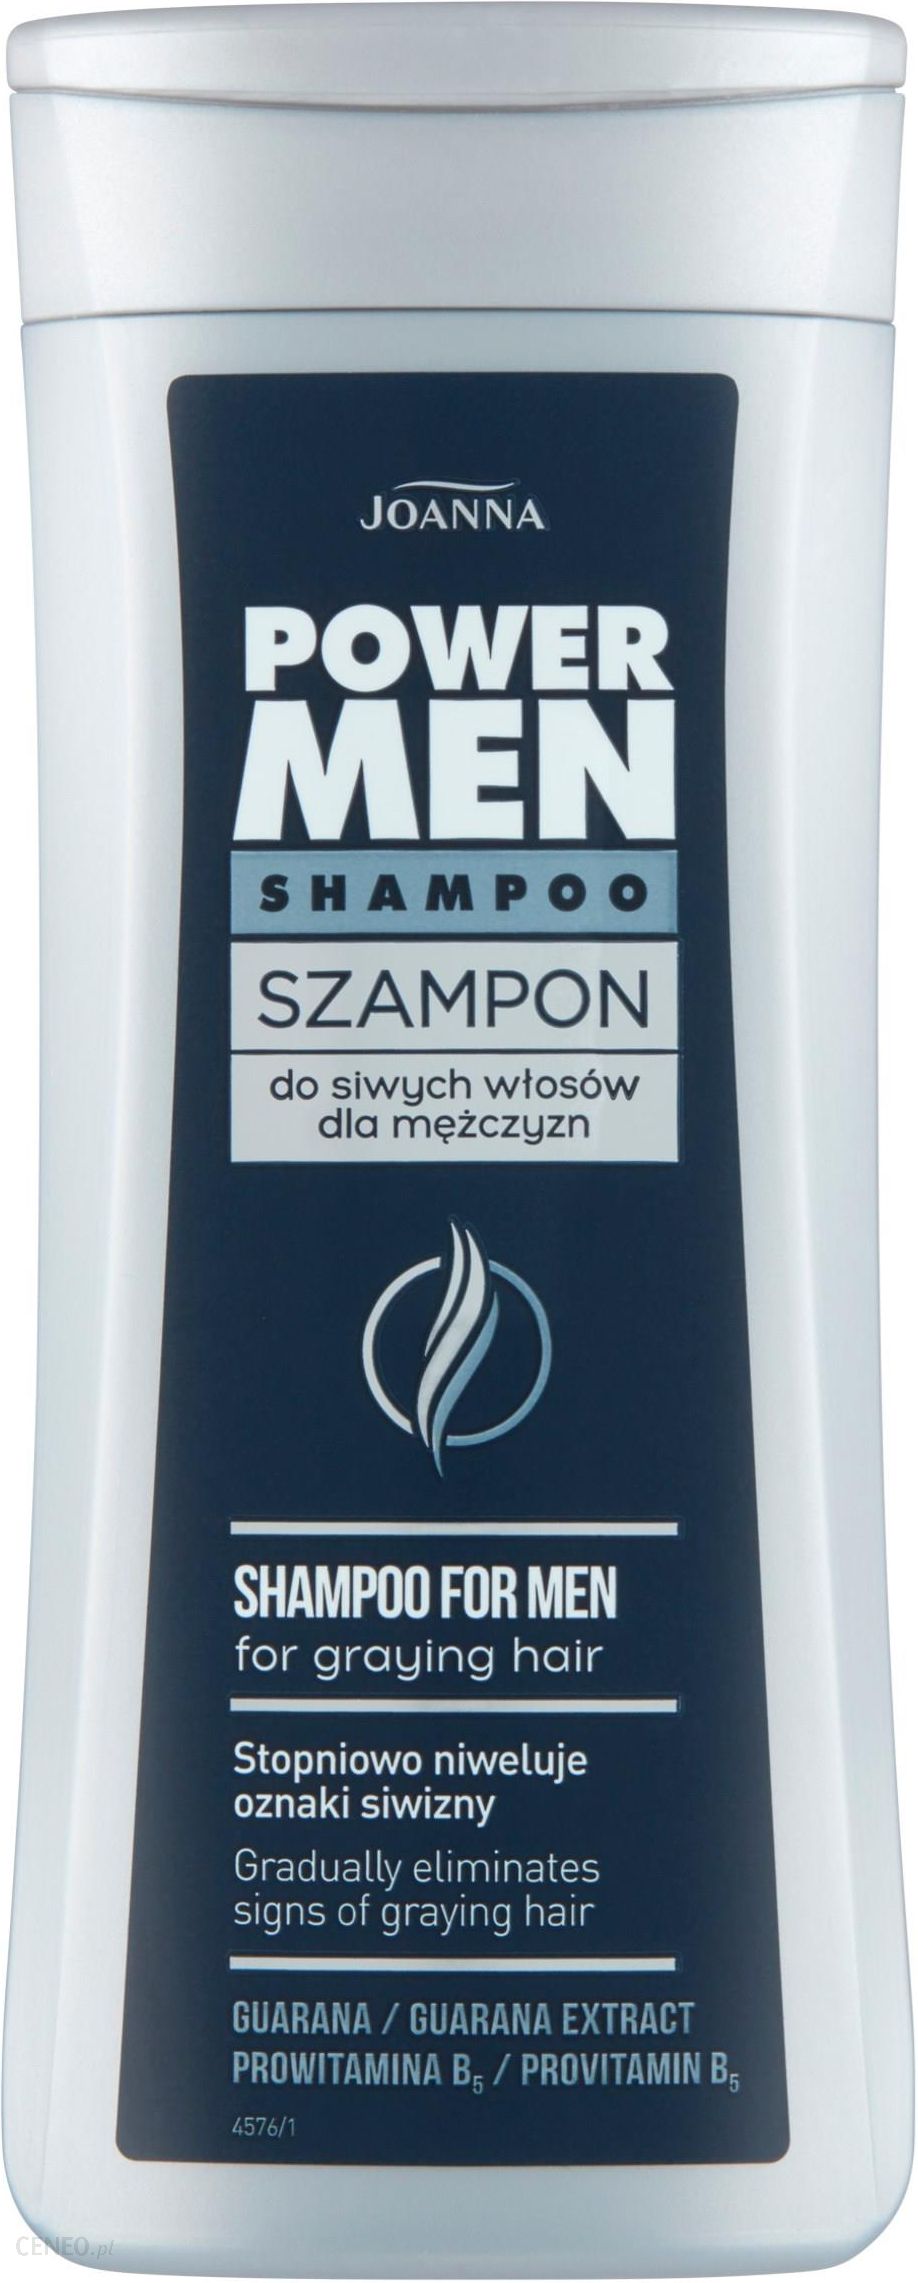 szampon męski ceneo